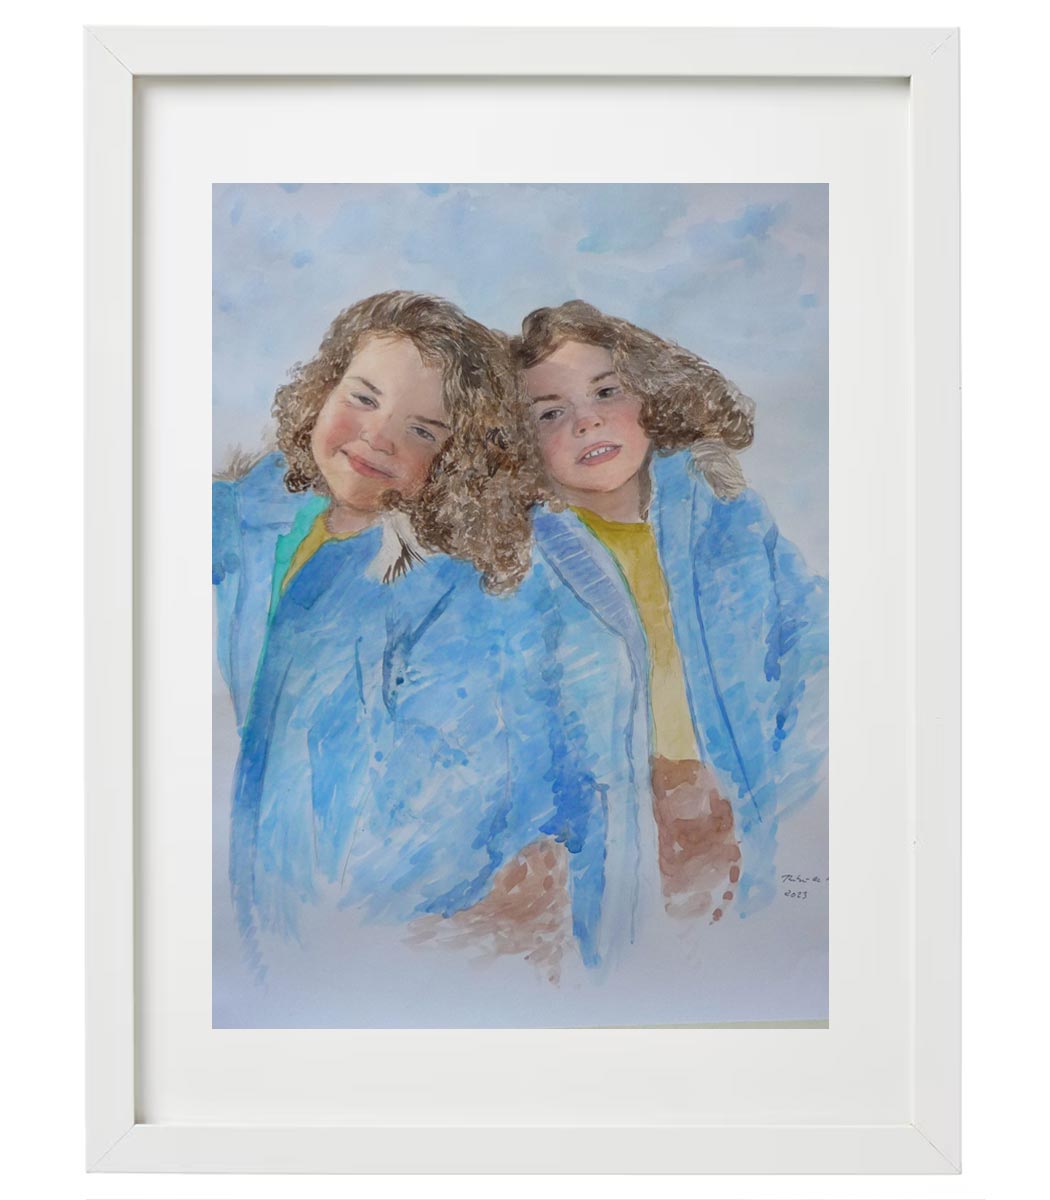 Acuarela de un retrato de dos hermanas pintado por encargo de una foto.